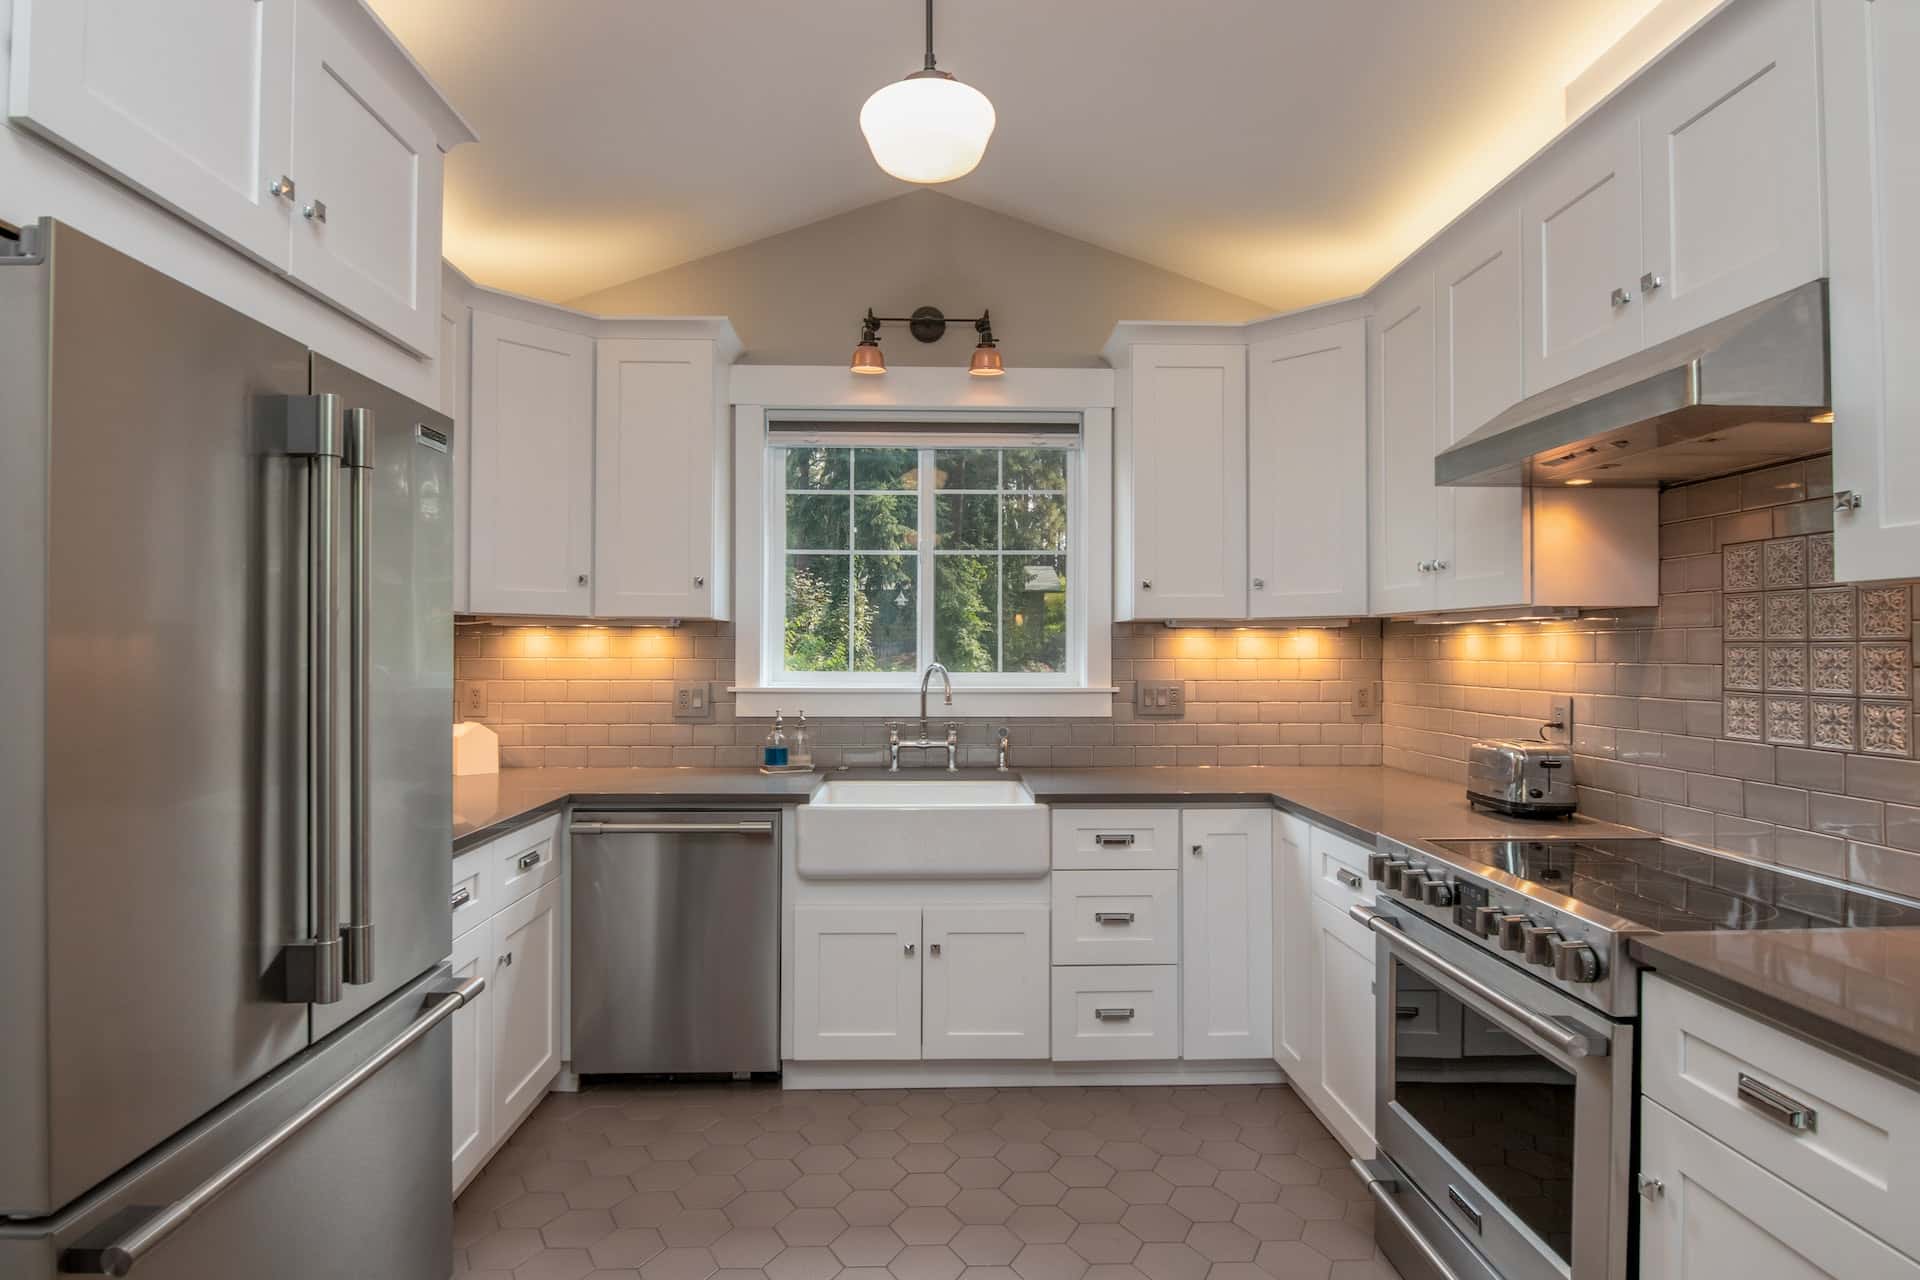 above kitchen cabinet lighting - Slimme verlichtingsideeën voor keukenkasten om uw keukenruimte op te fleuren